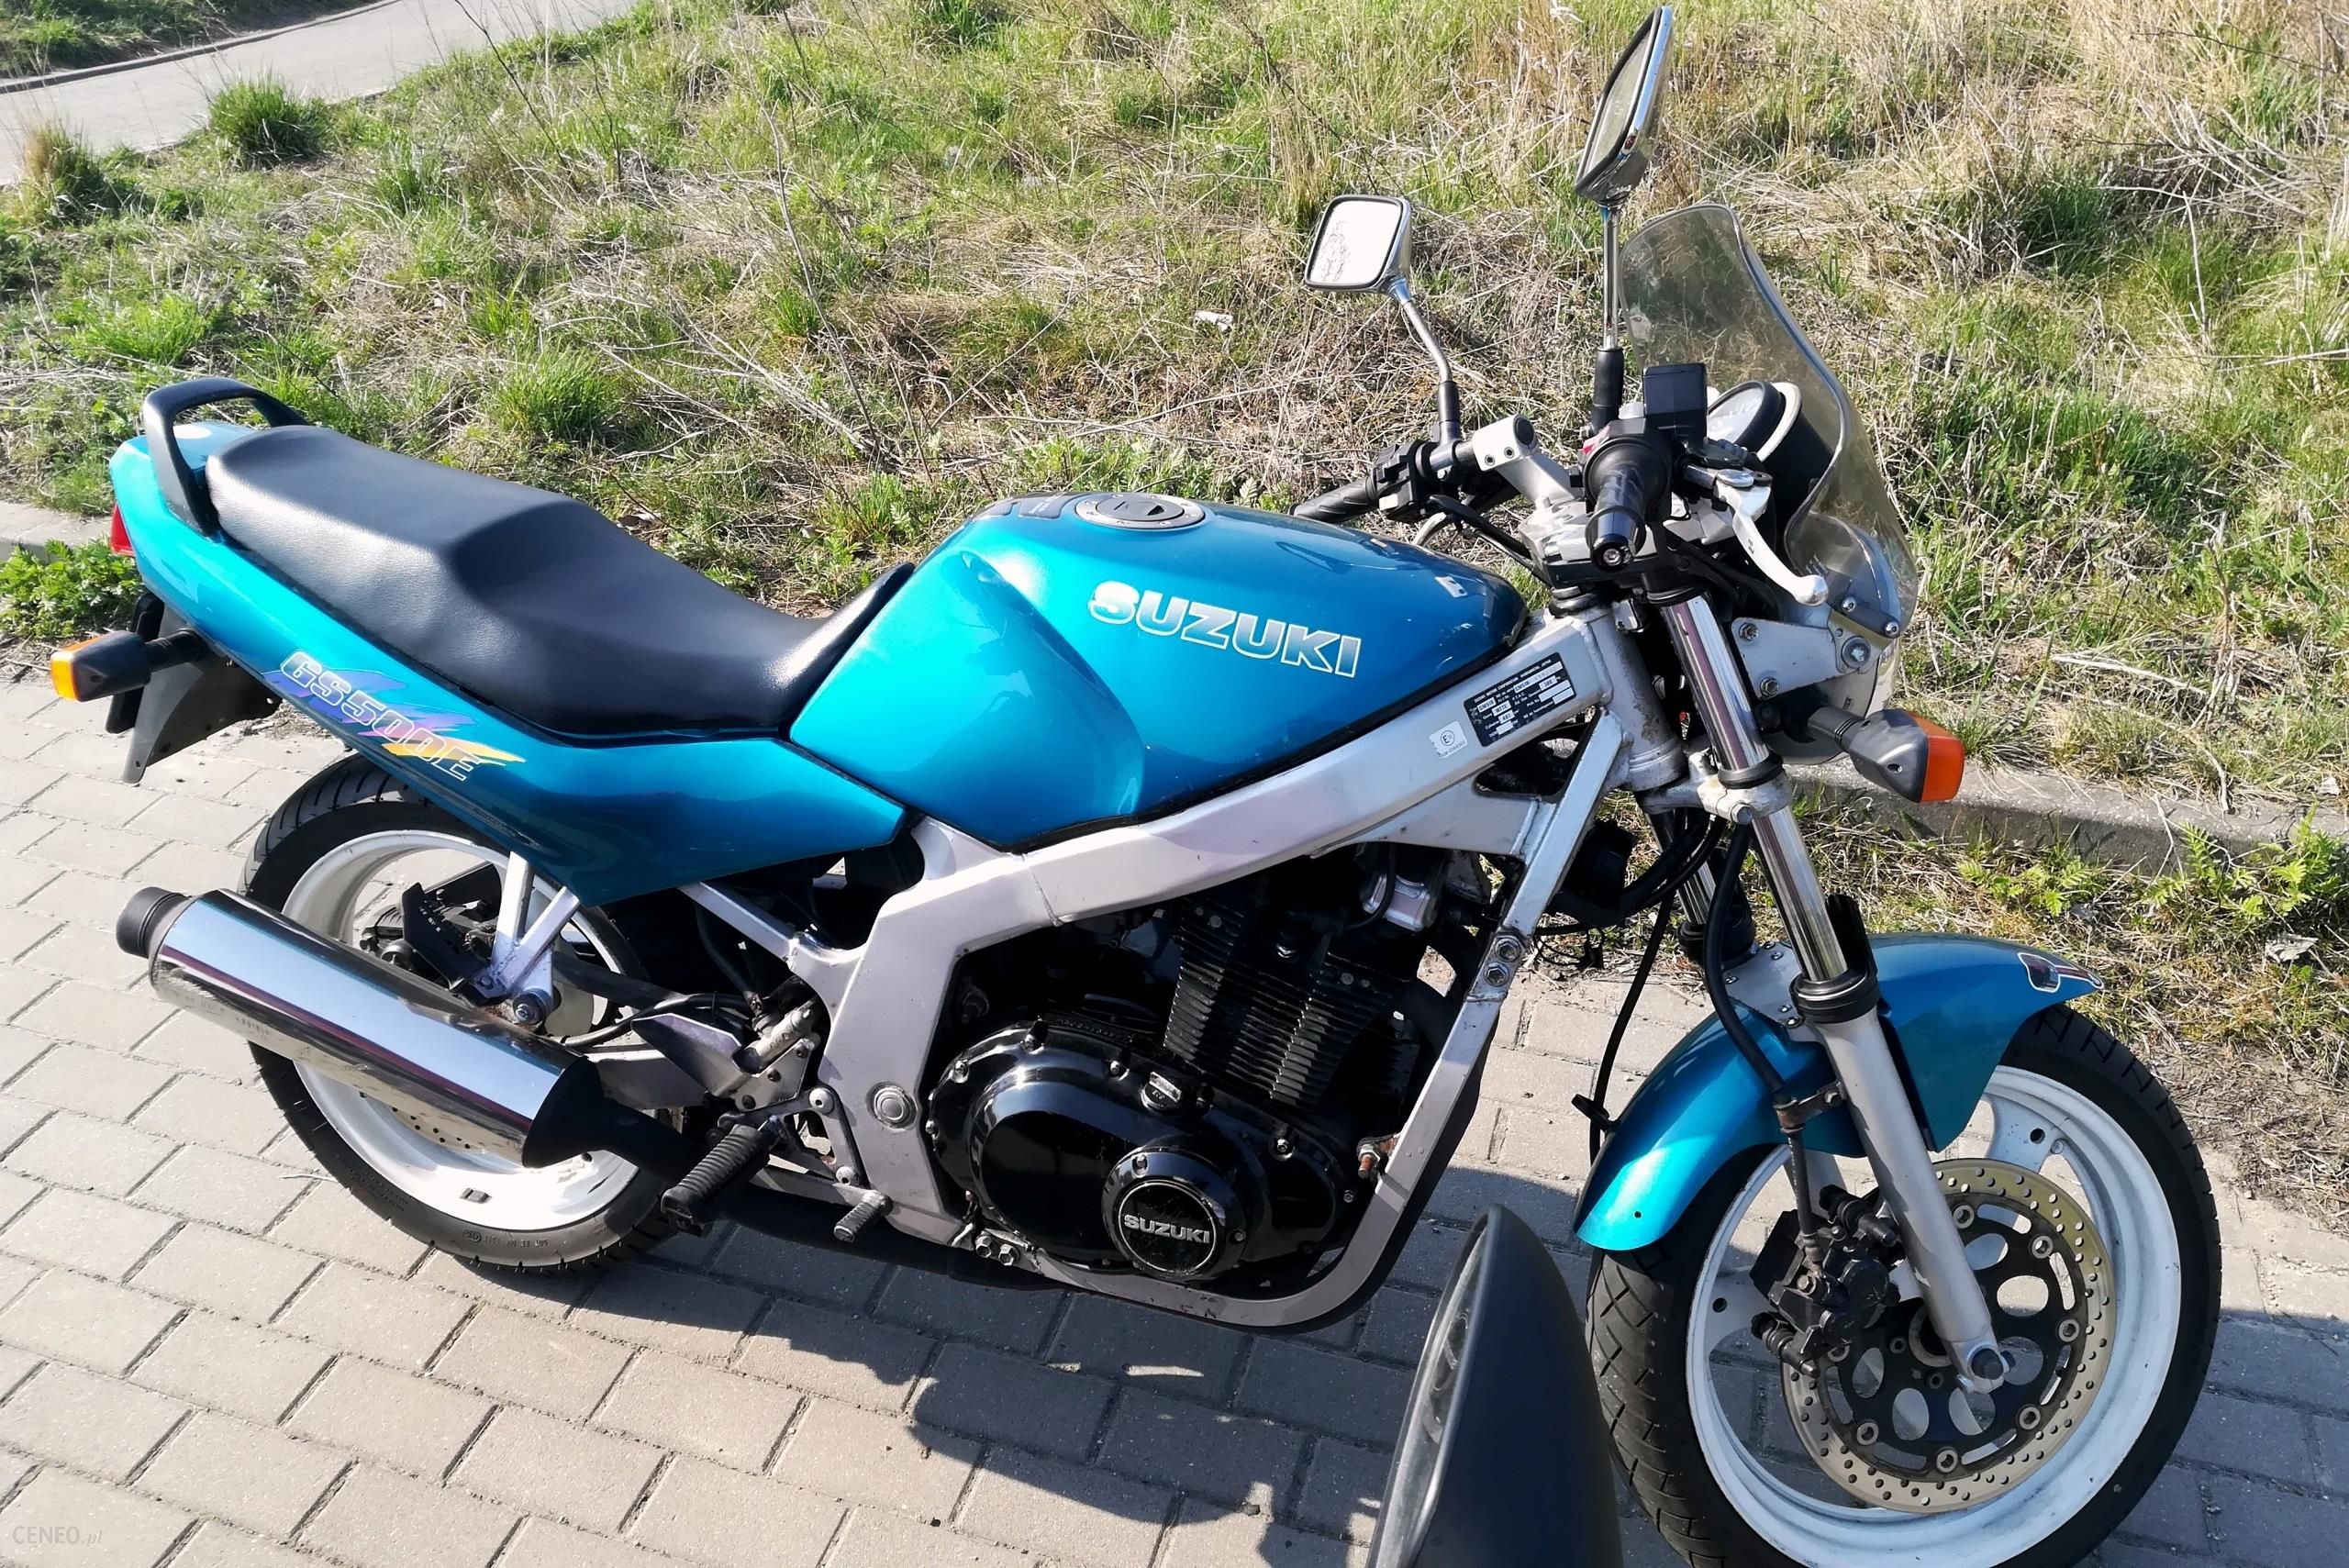 Motocykl Suzuki Gs 500 - Opinie I Ceny Na Ceneo.pl